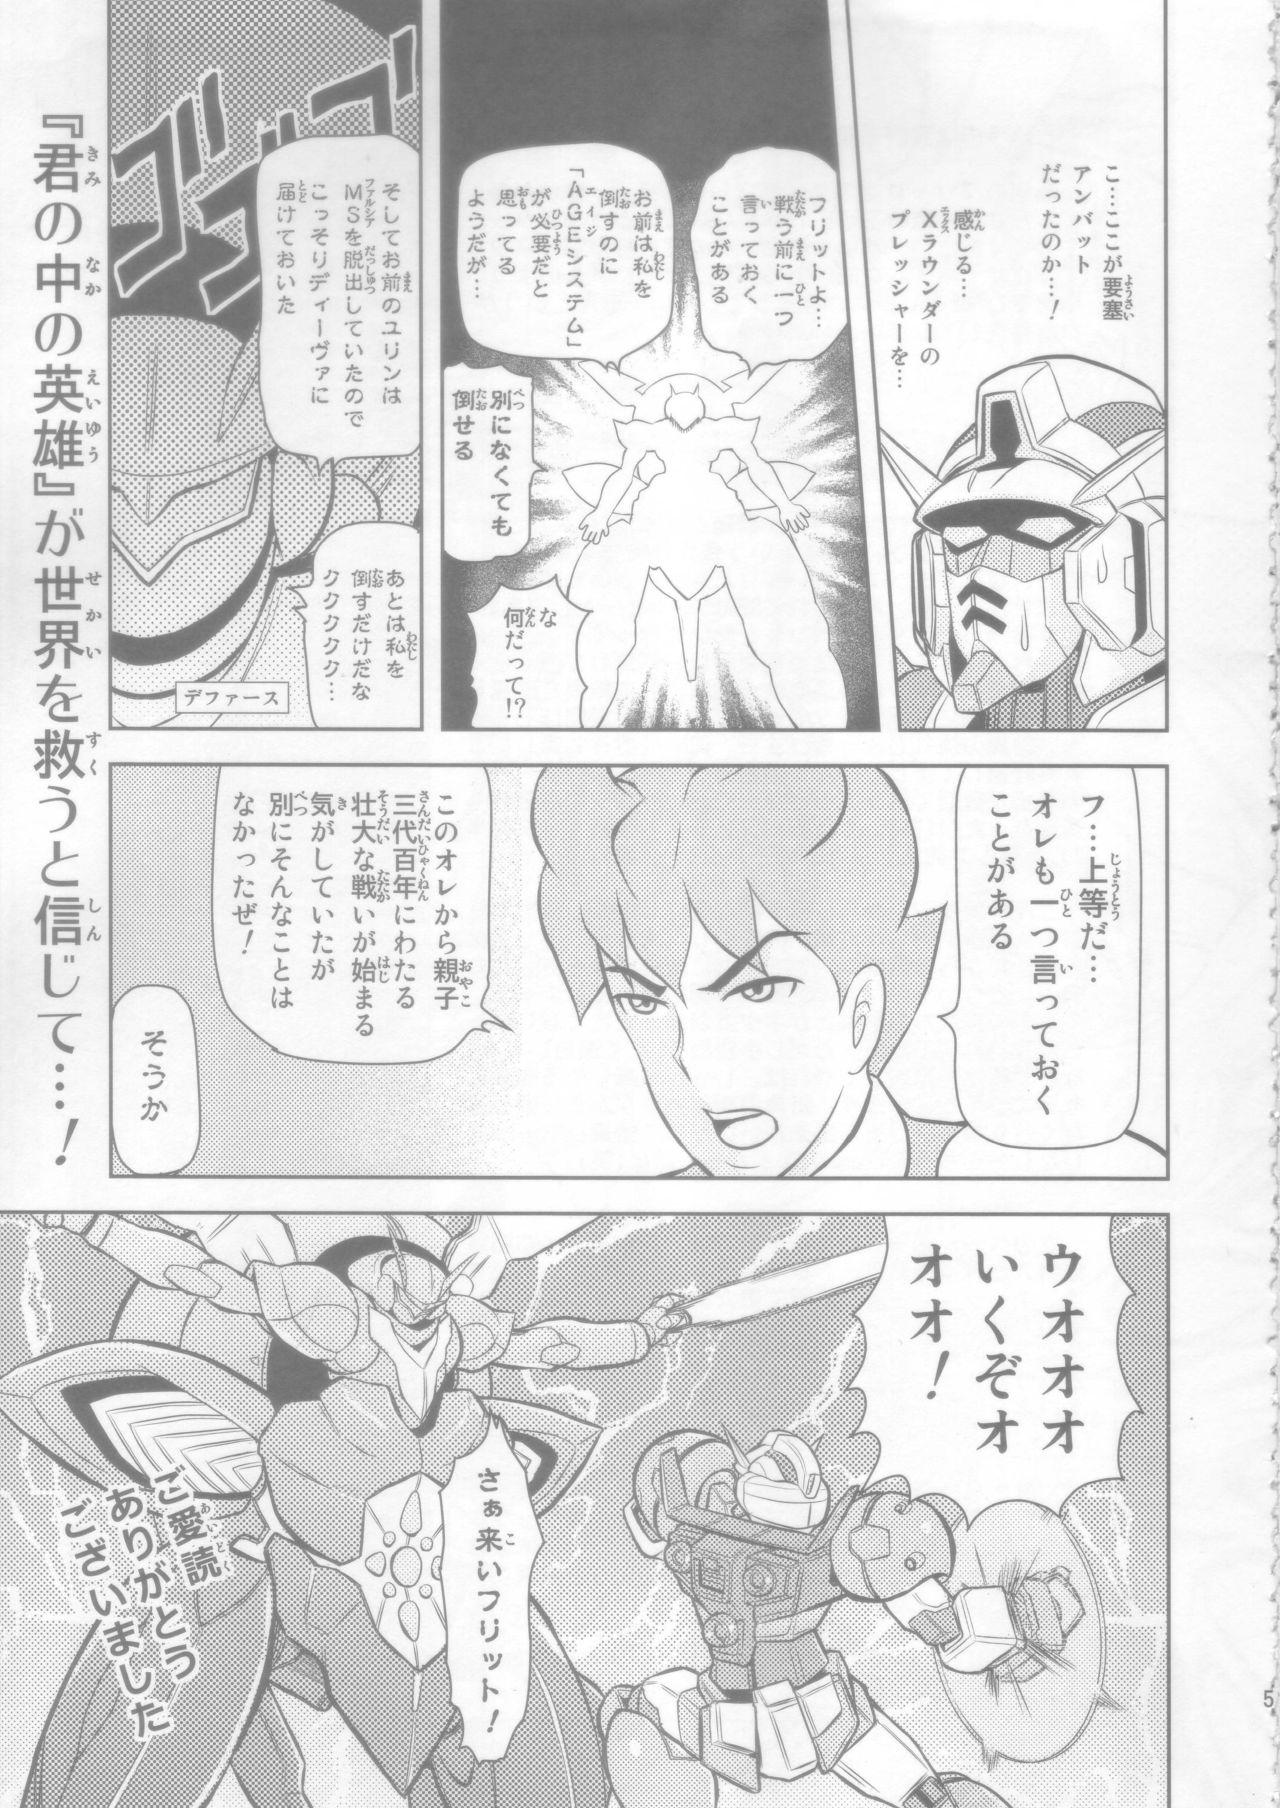 Cuckold AGE MASTER FLIT VIRGIN FLIGHT:04 - Gundam age Hardsex - Page 5